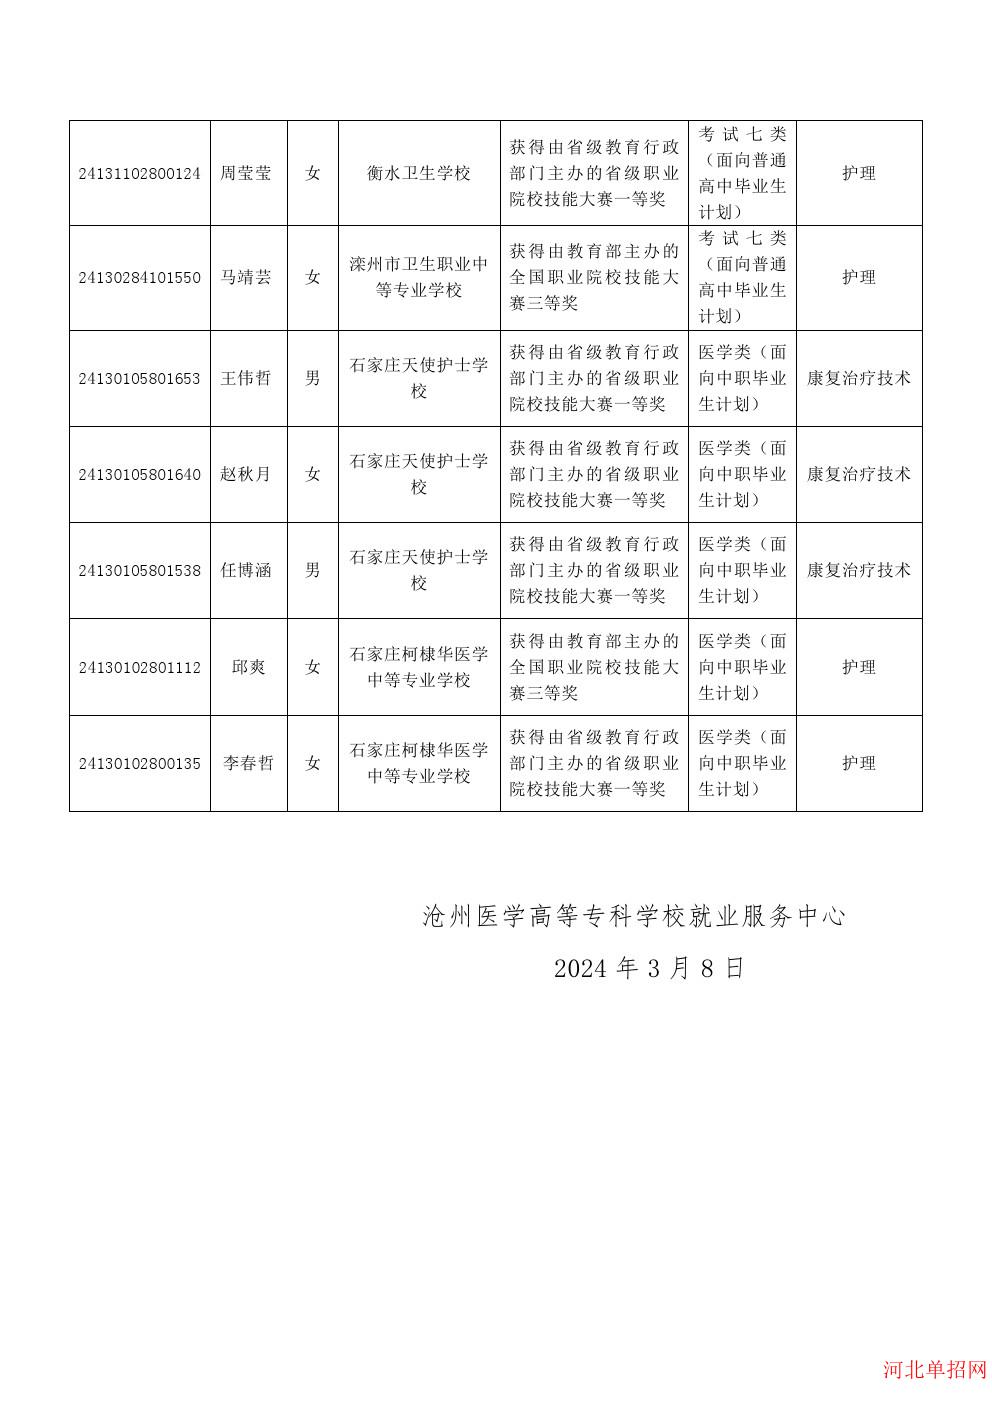 沧州医学高等专科学校2024年高职单招技能拔尖人才免试拟录取考生名单公示 图2